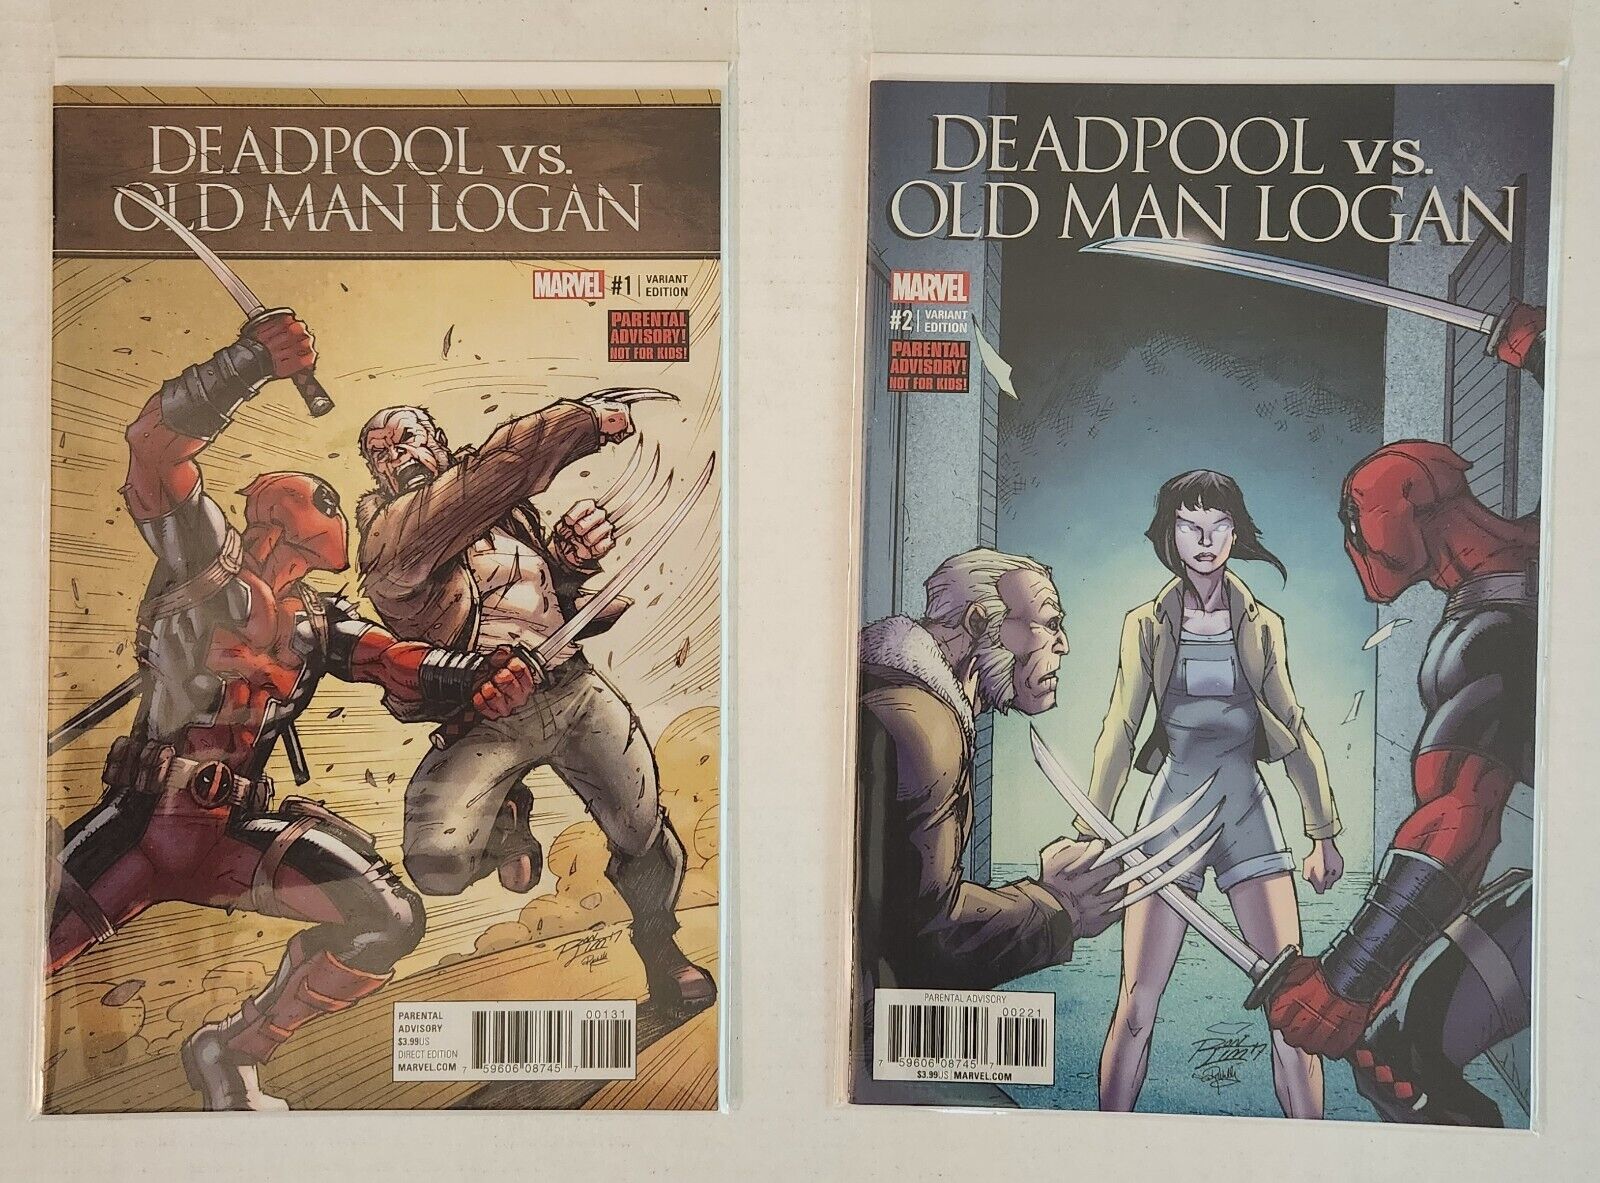 Deadpool vs Old Man Logan #1-5 (variants) (Marvel Comics 2017) 6 comics total